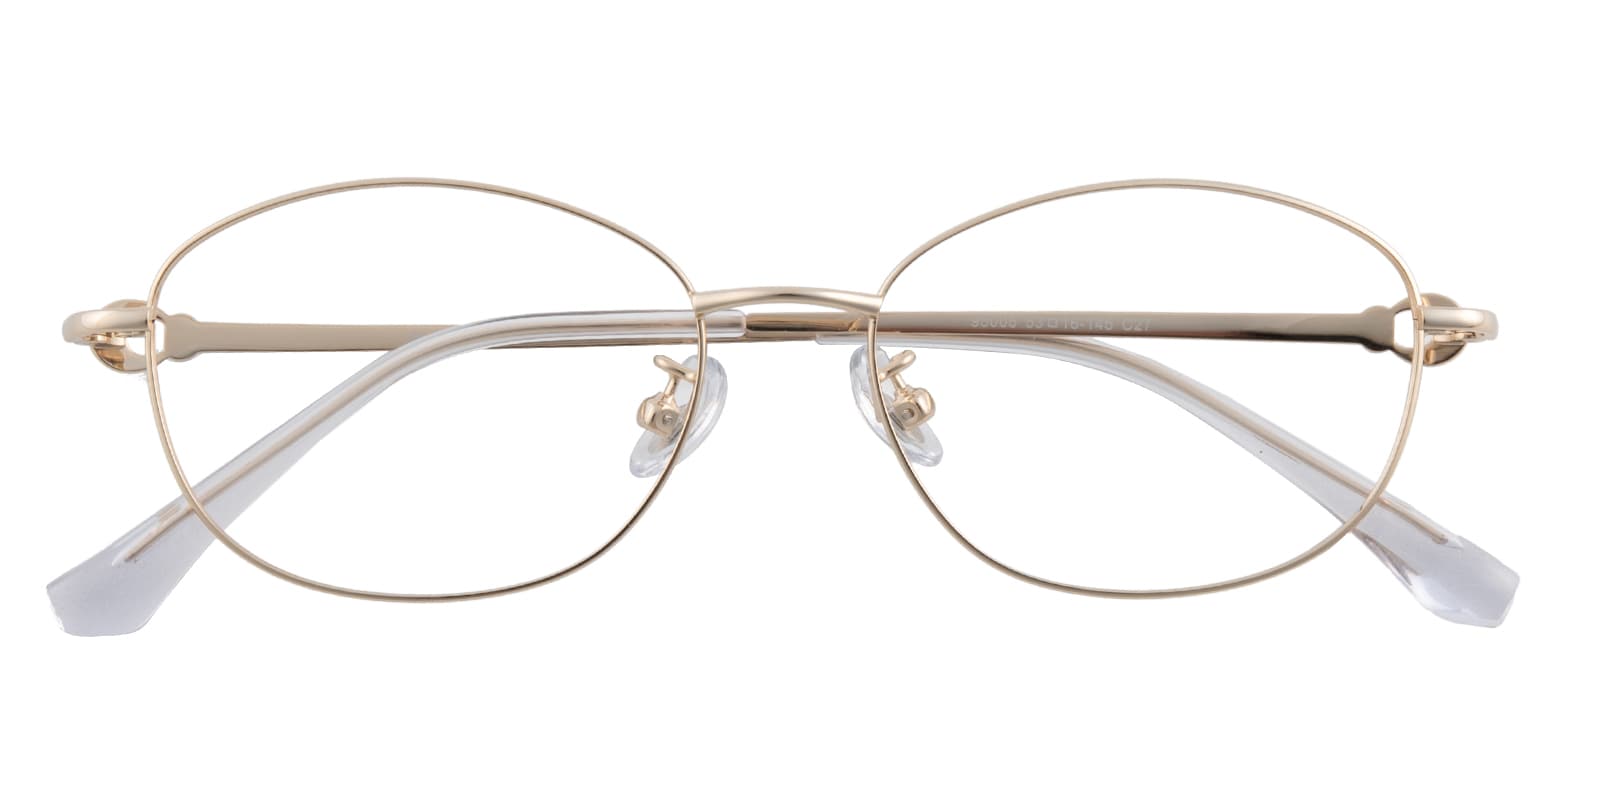 Oval Eyeglasses, Full Frame Golden/White Titanium - FT0606